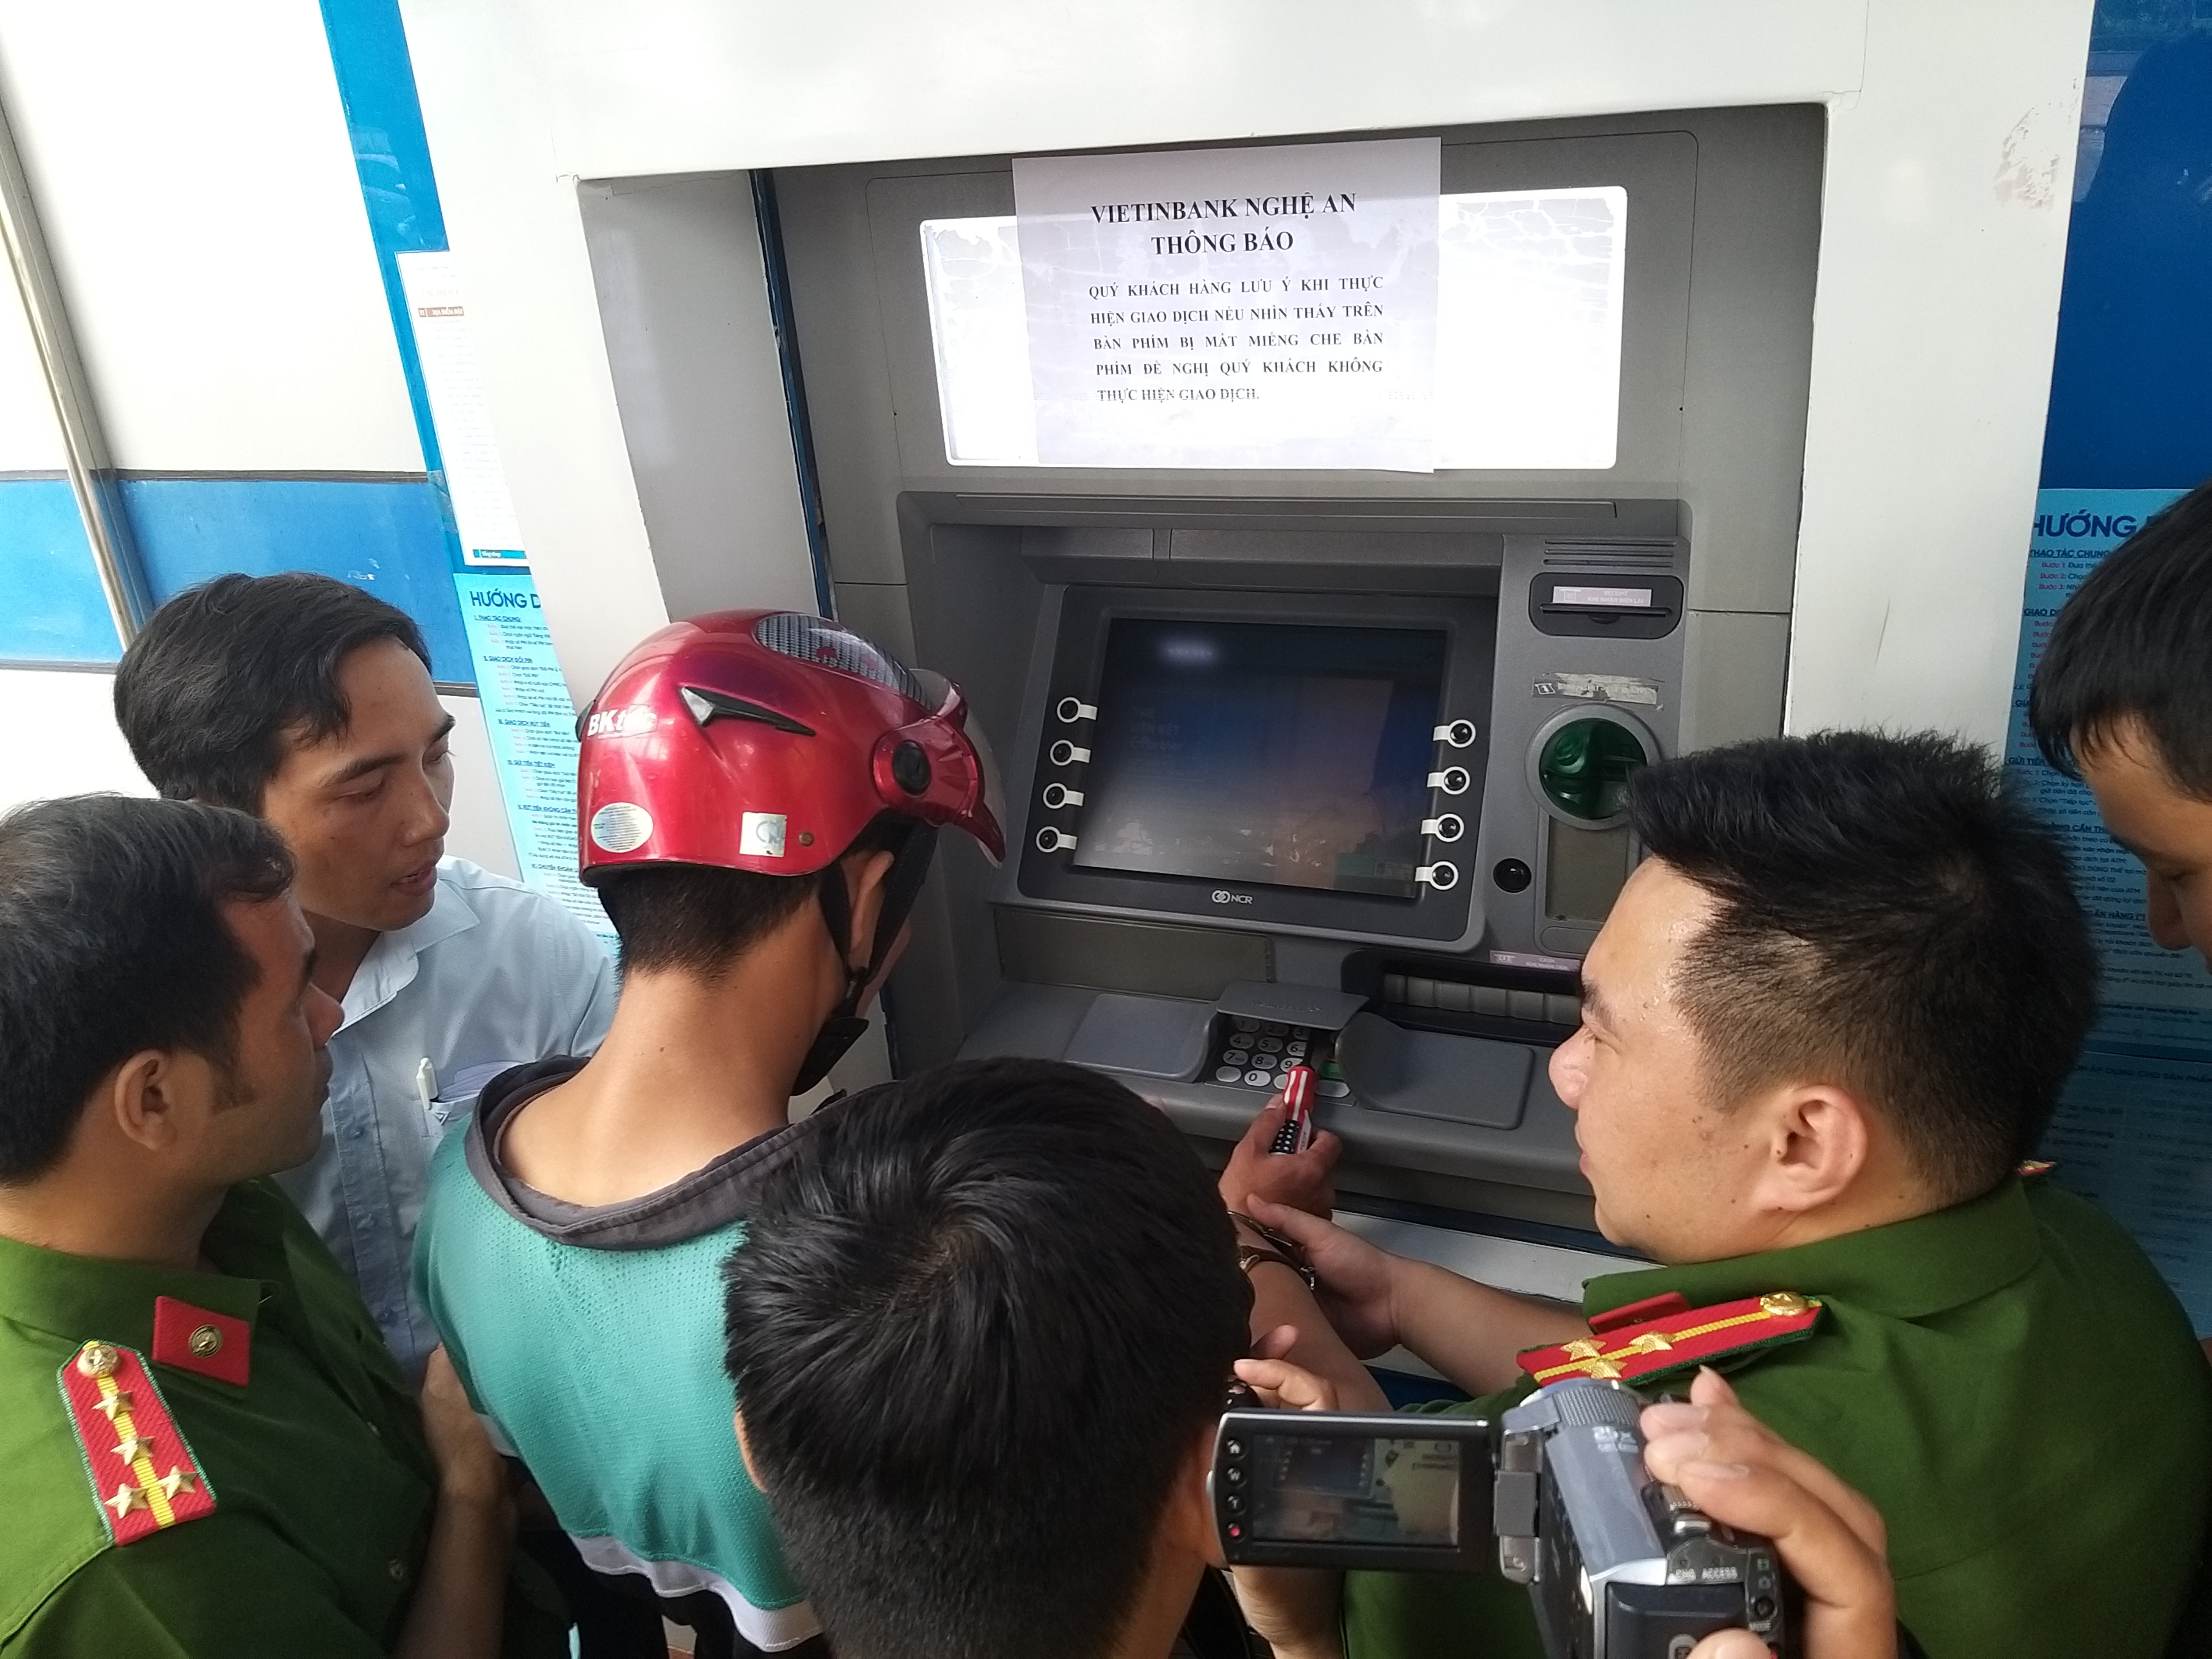 Đối tượng Lian Yu được phân công công đoạn lắp các thiết bị điện tử tại các cây ATM để ăn cắp thông tin tài khoản của khách hàng. Ảnh: Phạm Bằng